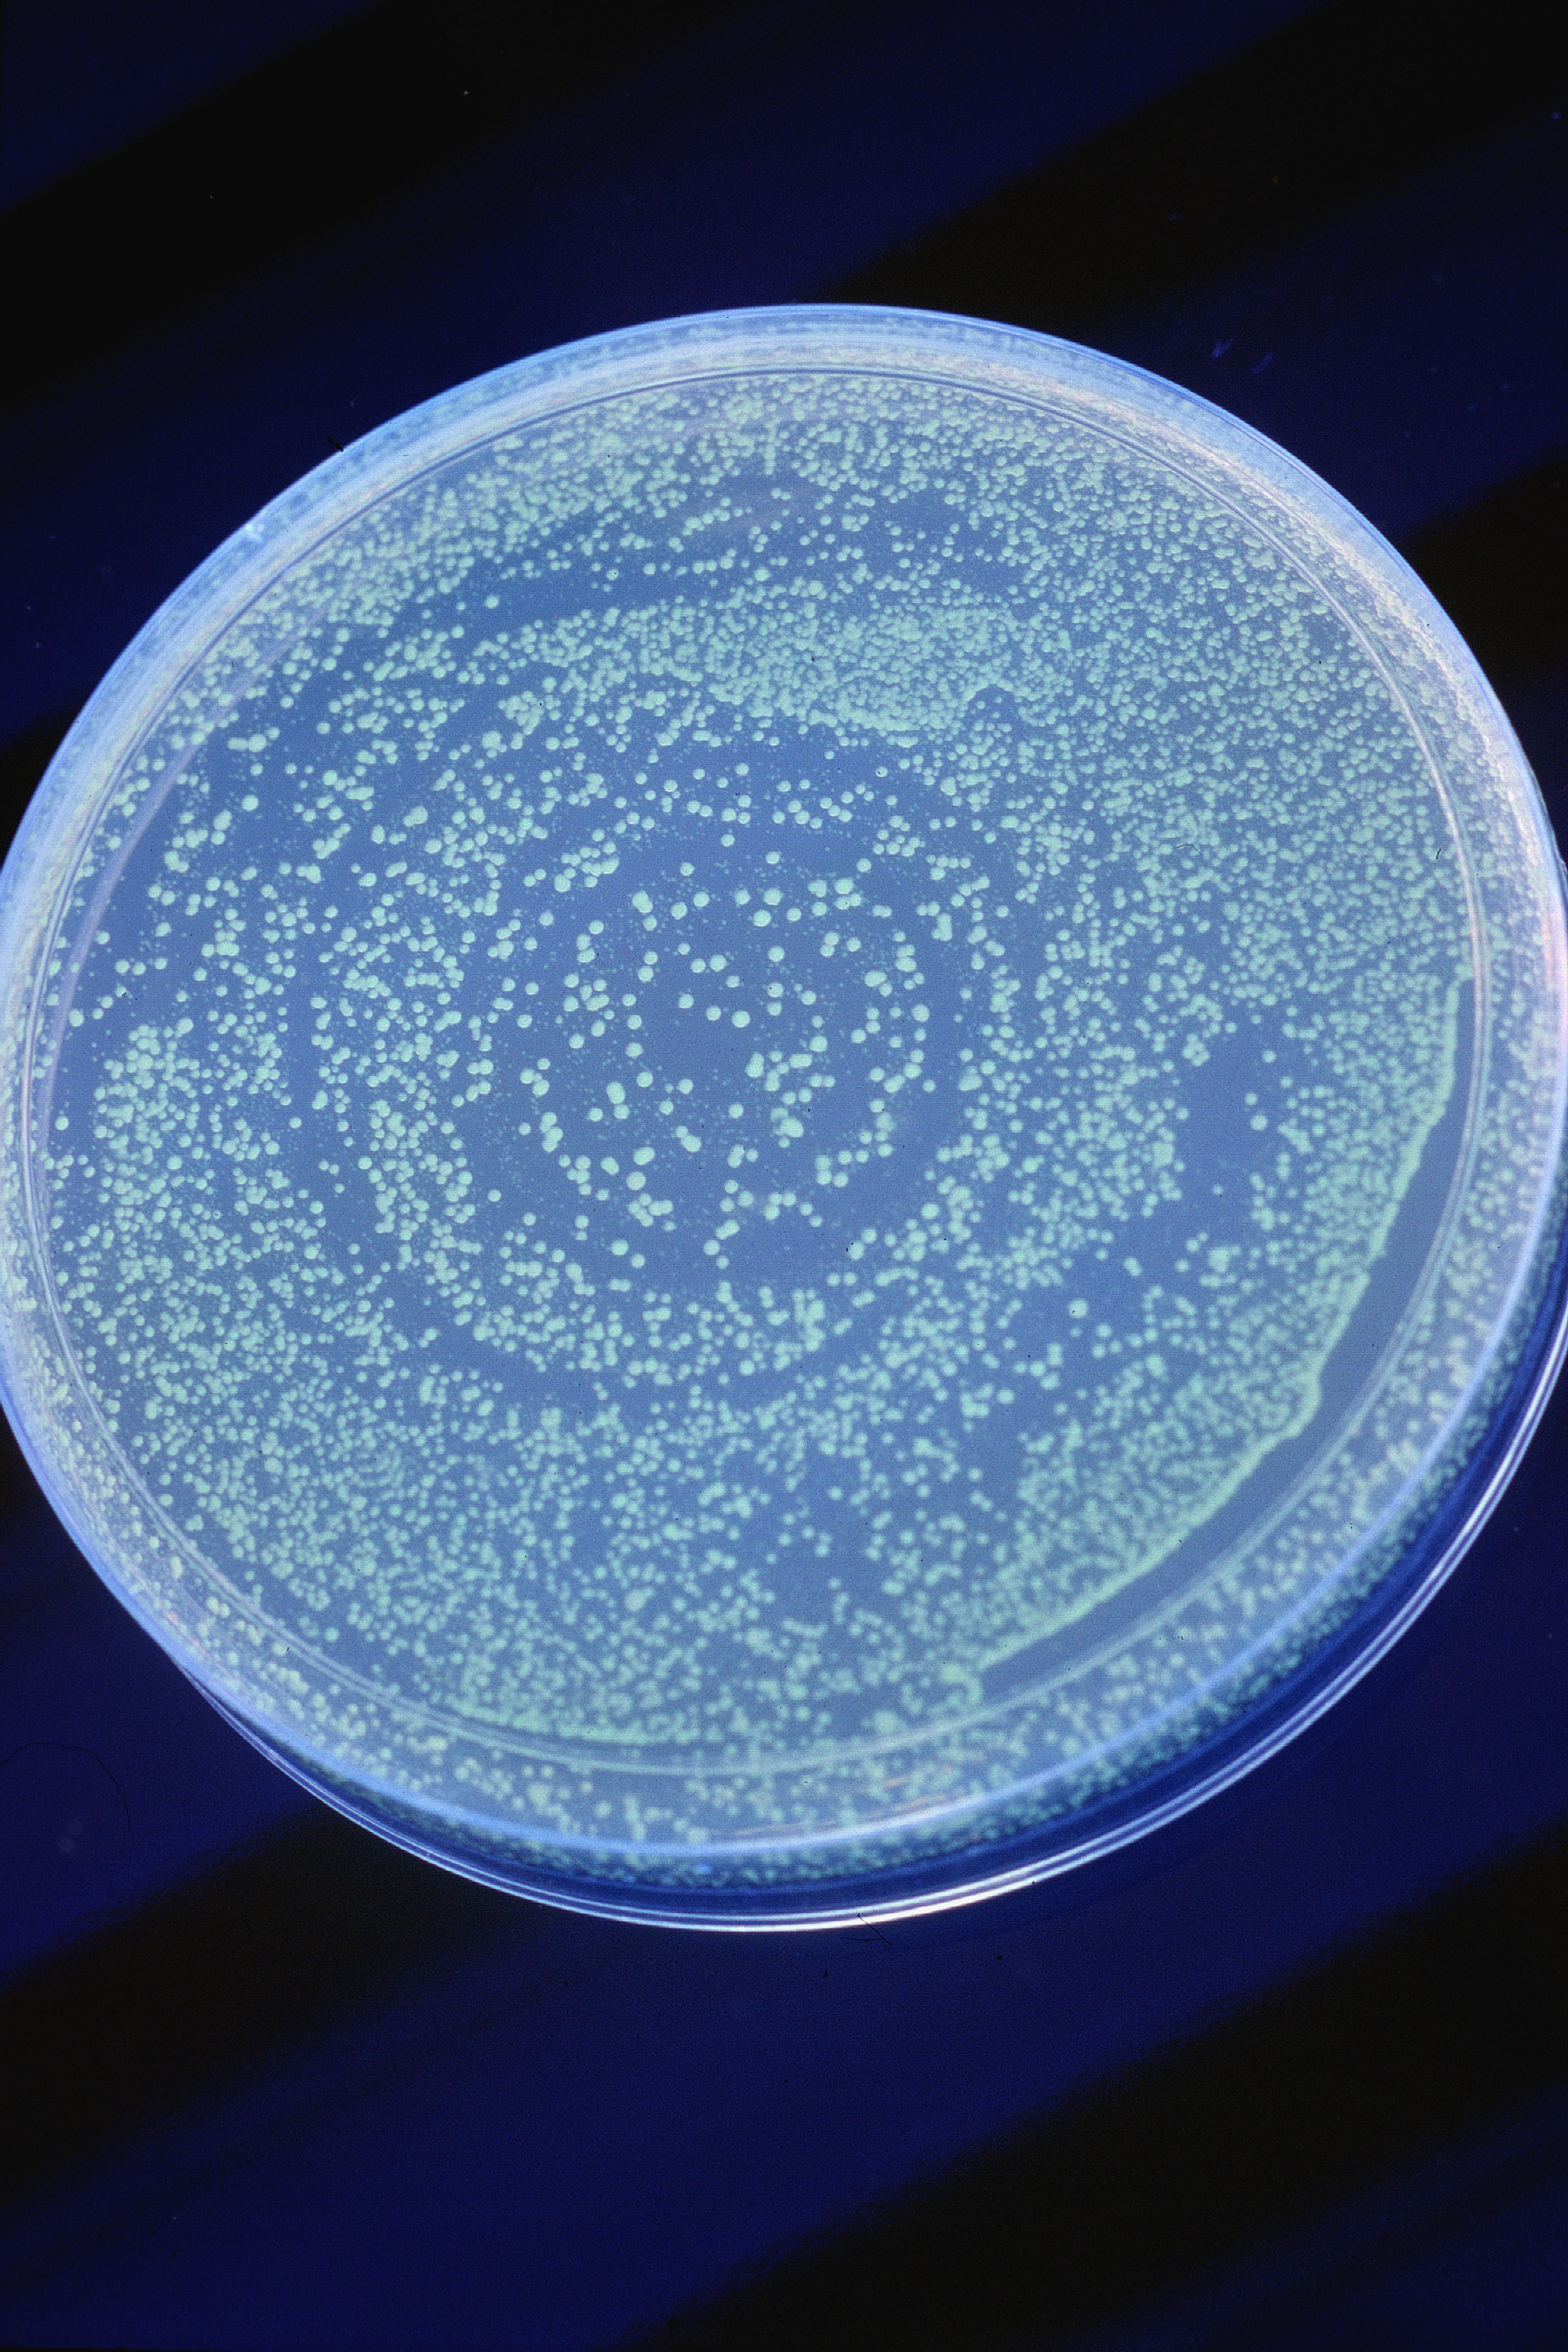 Bacteria on a petri dish